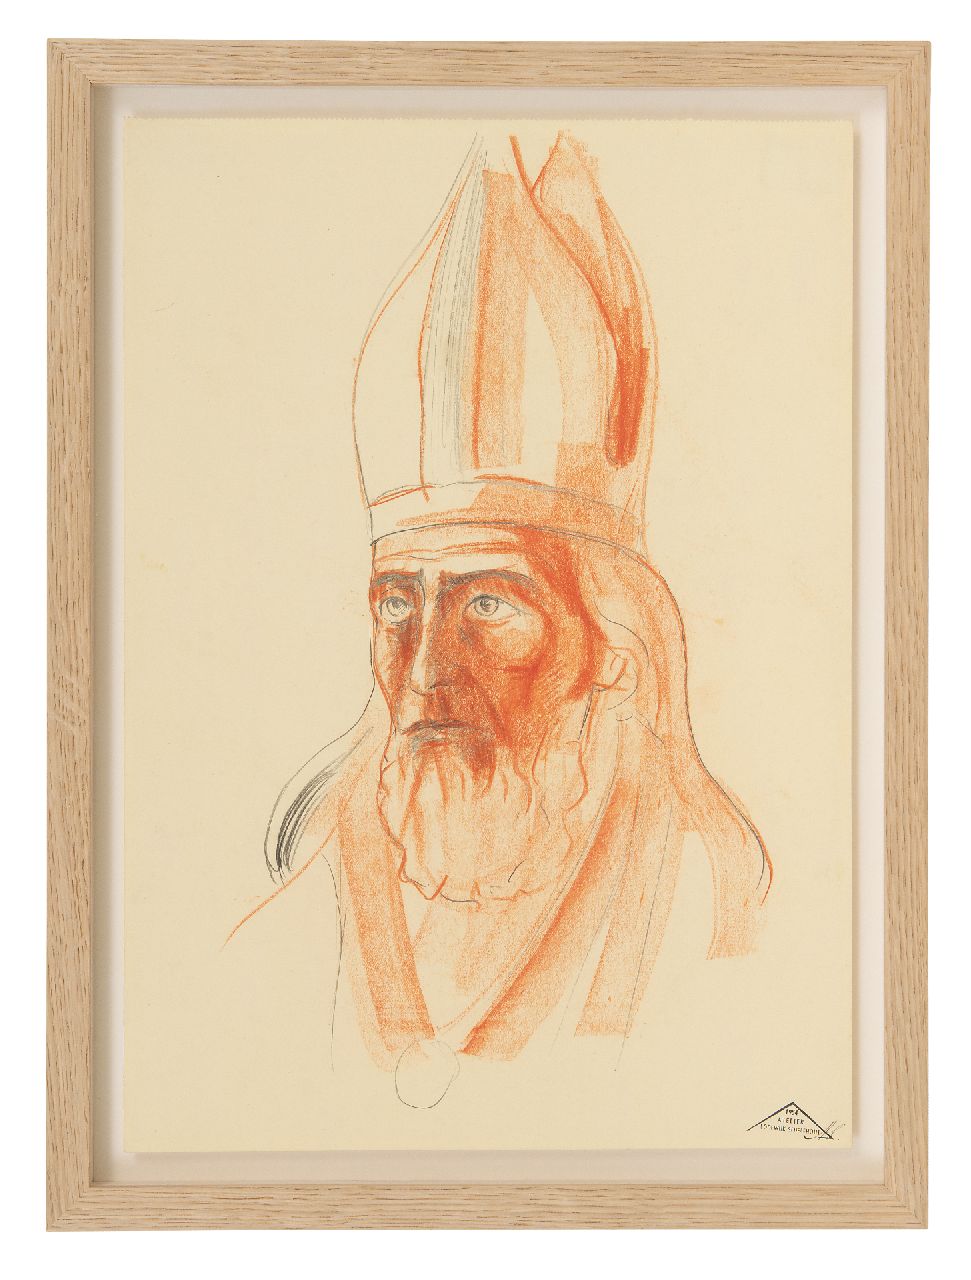 Schelfhout L.  | Lodewijk Schelfhout | Aquarellen en tekeningen te koop aangeboden | Portret van een heilige met mijter, potlood en krijt op papier 34,0 x 20,0 cm